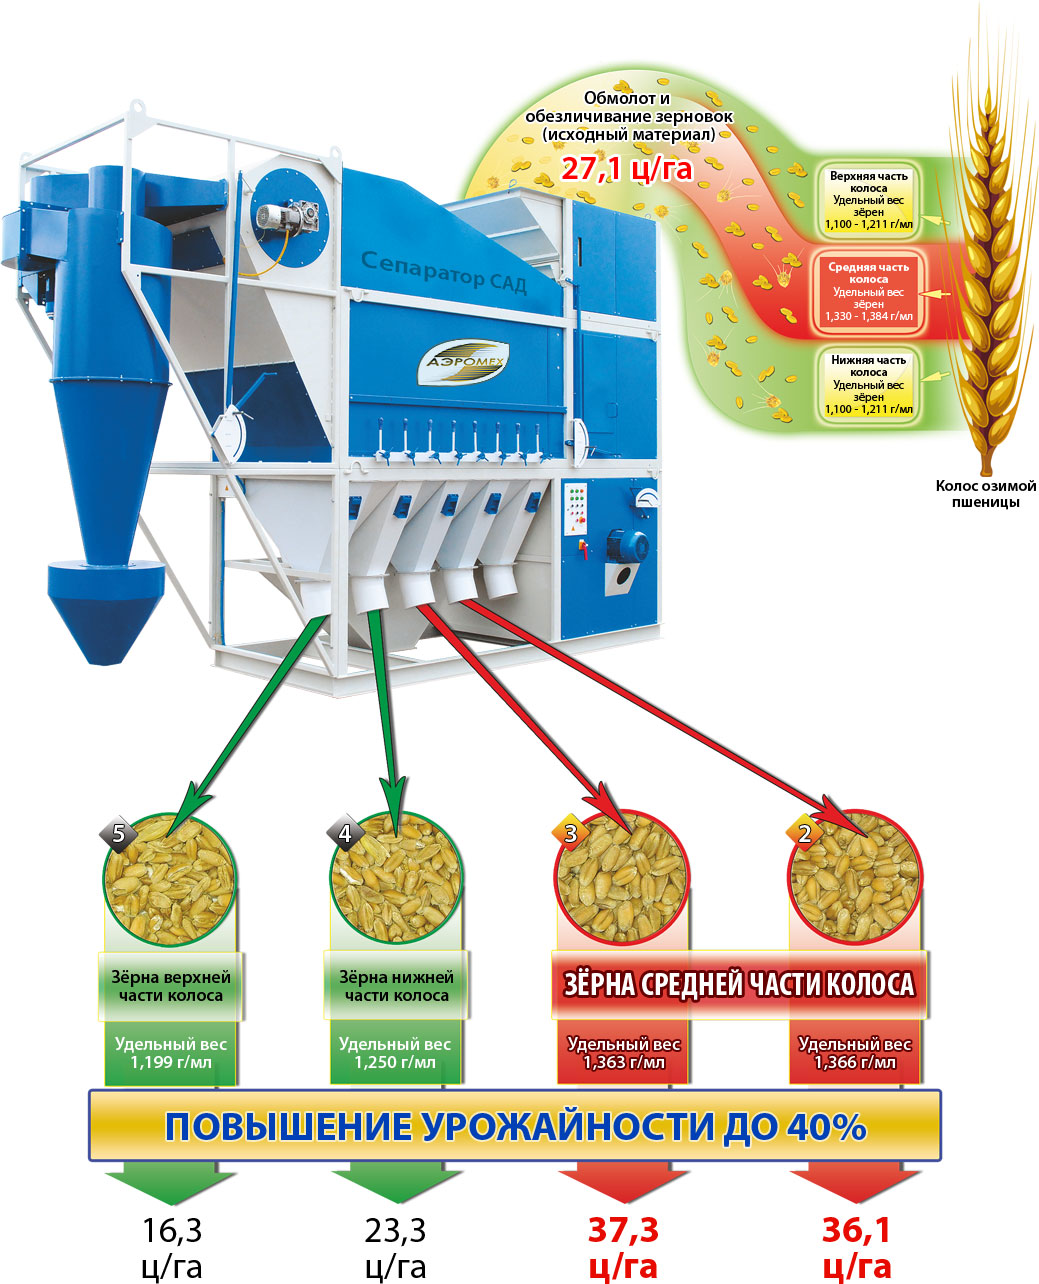 Схема Технология получения высокоурожайных семян на зерноочистительной машине САД